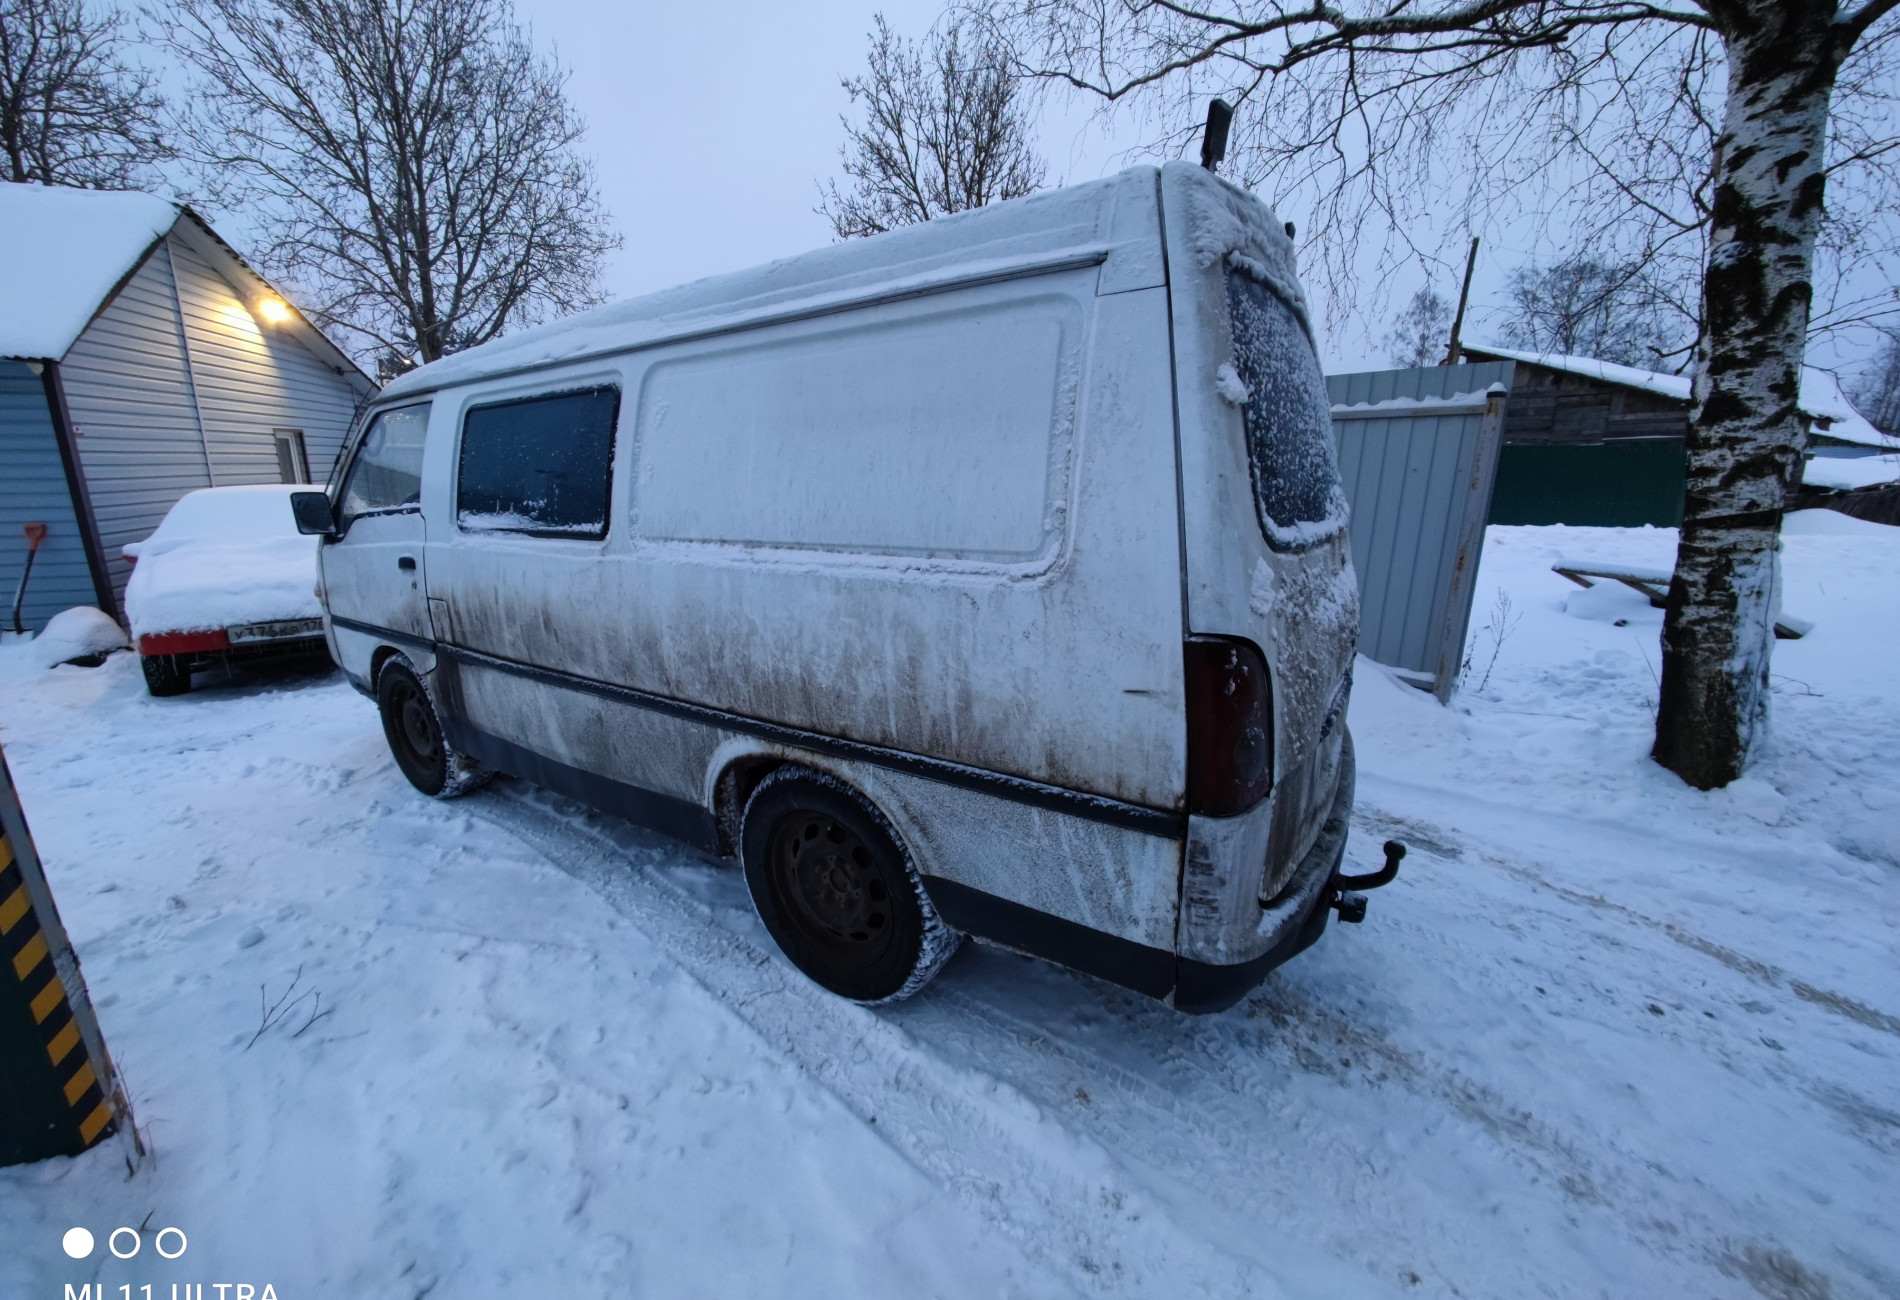 Аренда hyundai h1 эконом класса 2000 года в городе Москва Проспект Ветеранов от 1440 руб./сутки, задний привод, двигатель: дизель, объем 2.5 литров, без водителя, недорого, вид 2 - RentRide